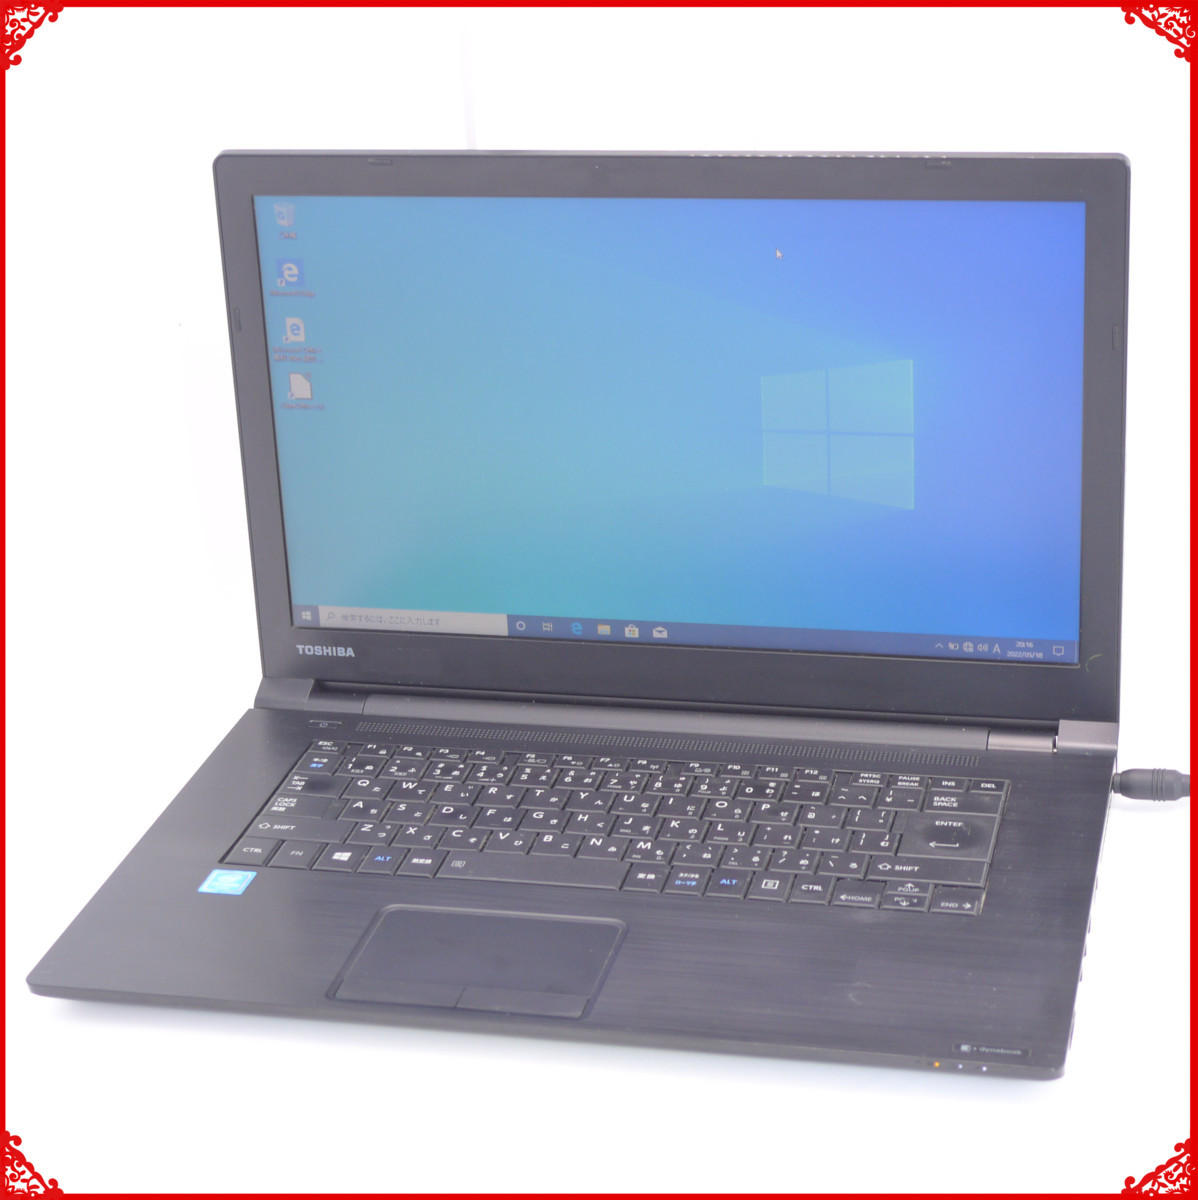 0円 激安格安割引情報満載 良品 上位モデル dynabook R63 B 第6世代 Core i5-6200U メモリ8GB SSD:256GB カメラ WLAN Office2019 Win10.